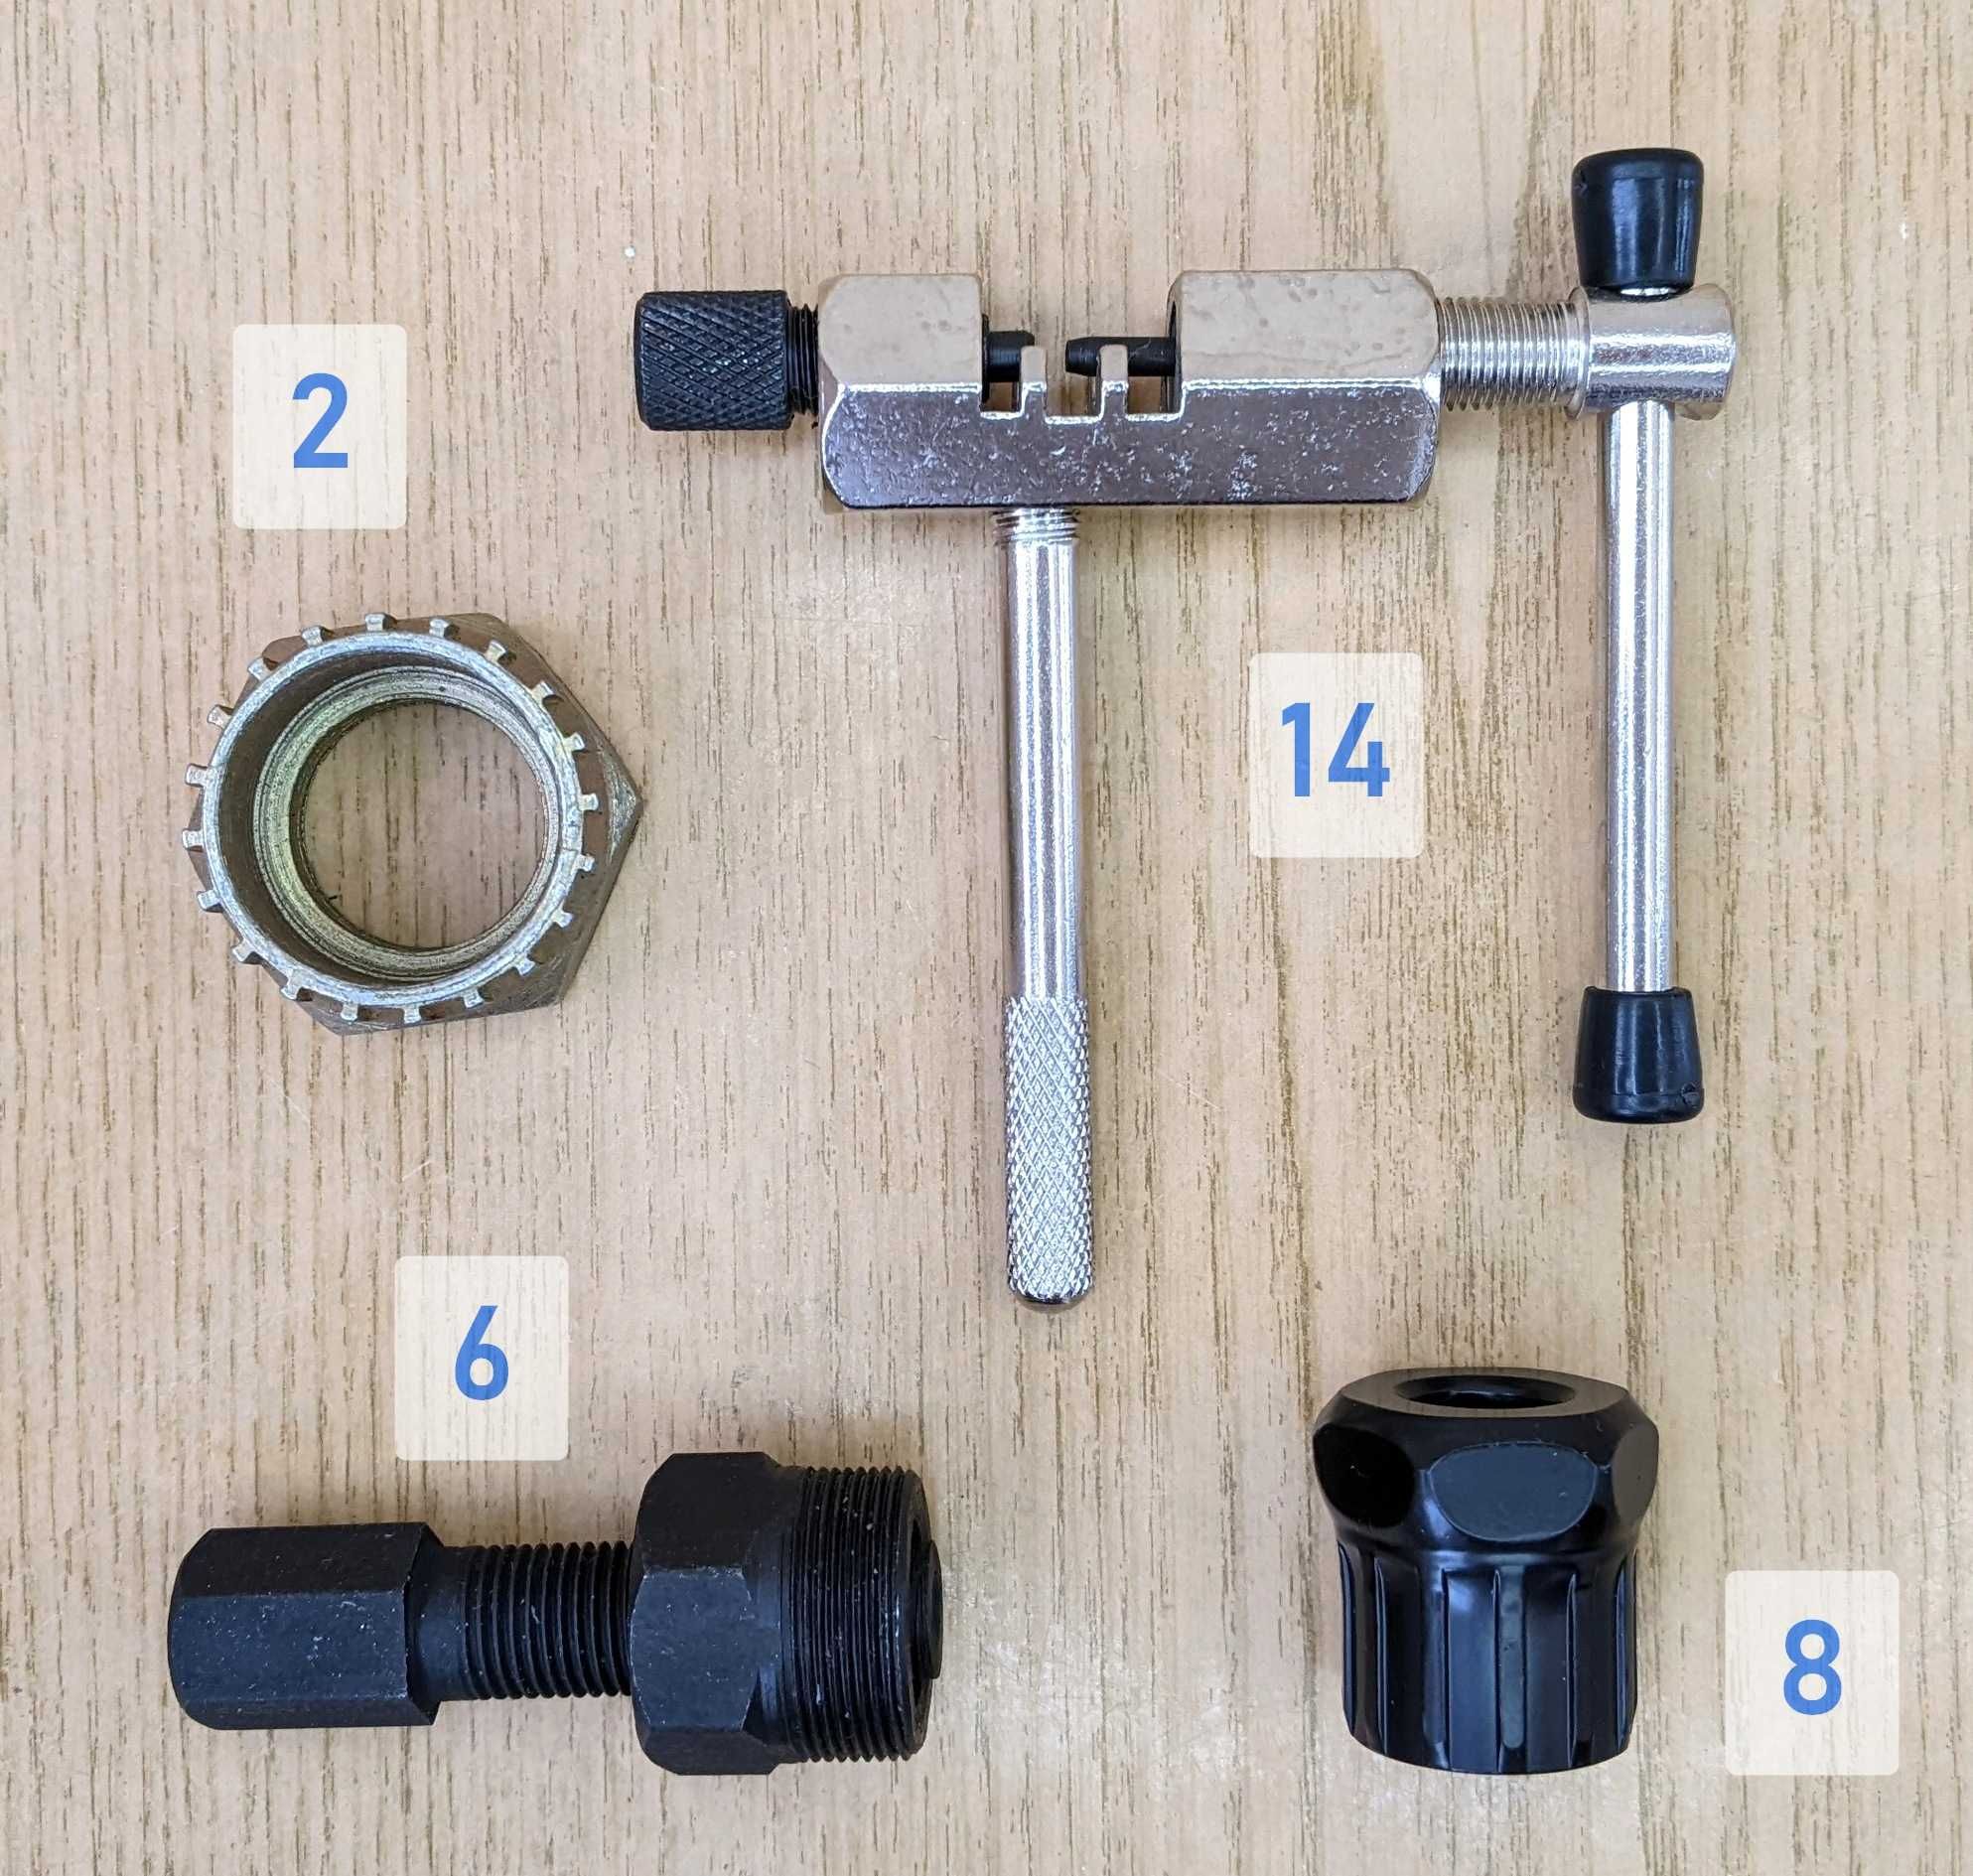 Вело инструменты - съемники, ключи, мультитул и выжимки цепи.